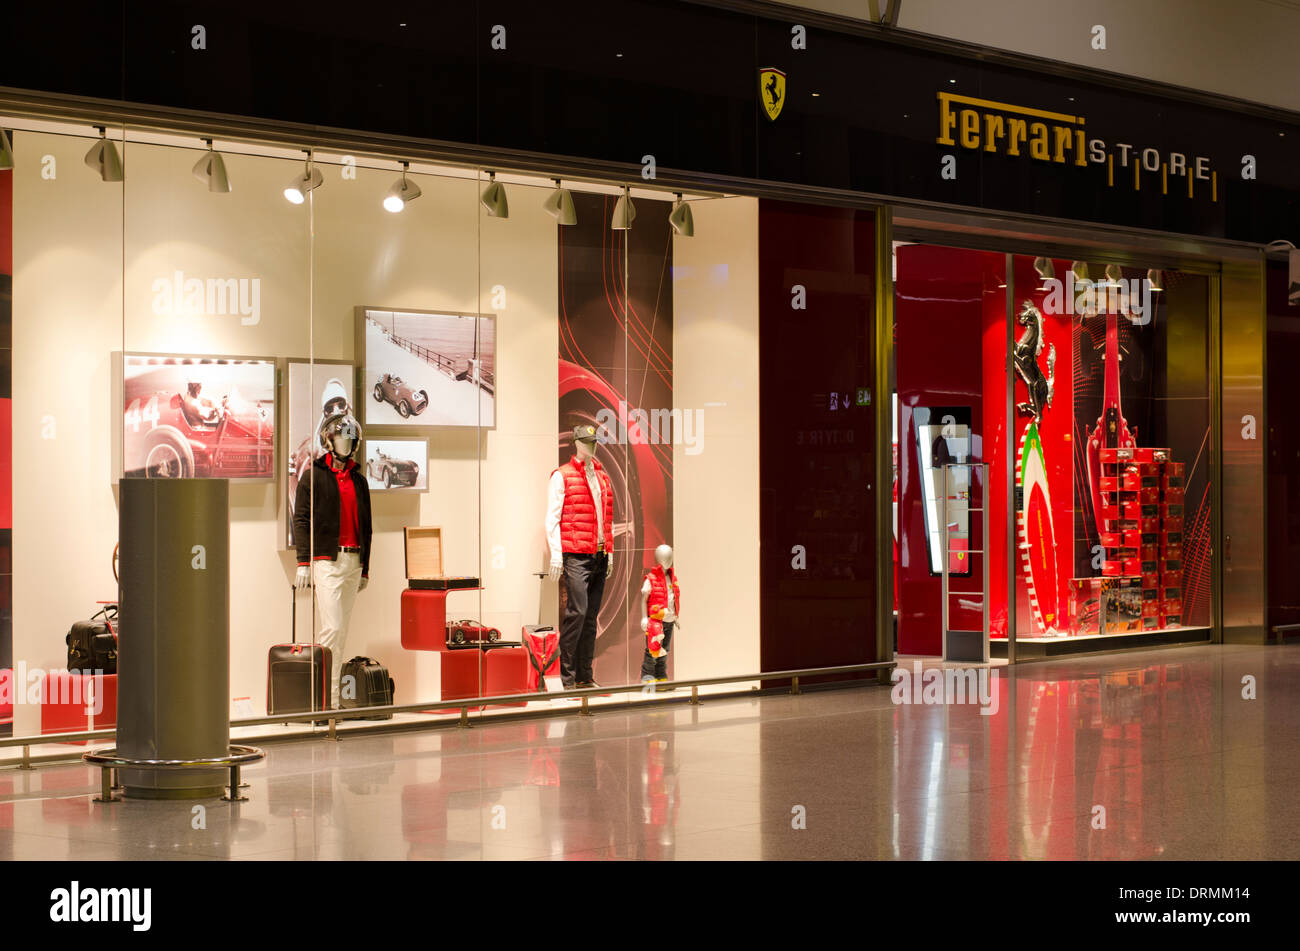 Ferrari Store auf dem Flughafen von Malaga. Spanien. Stockfoto